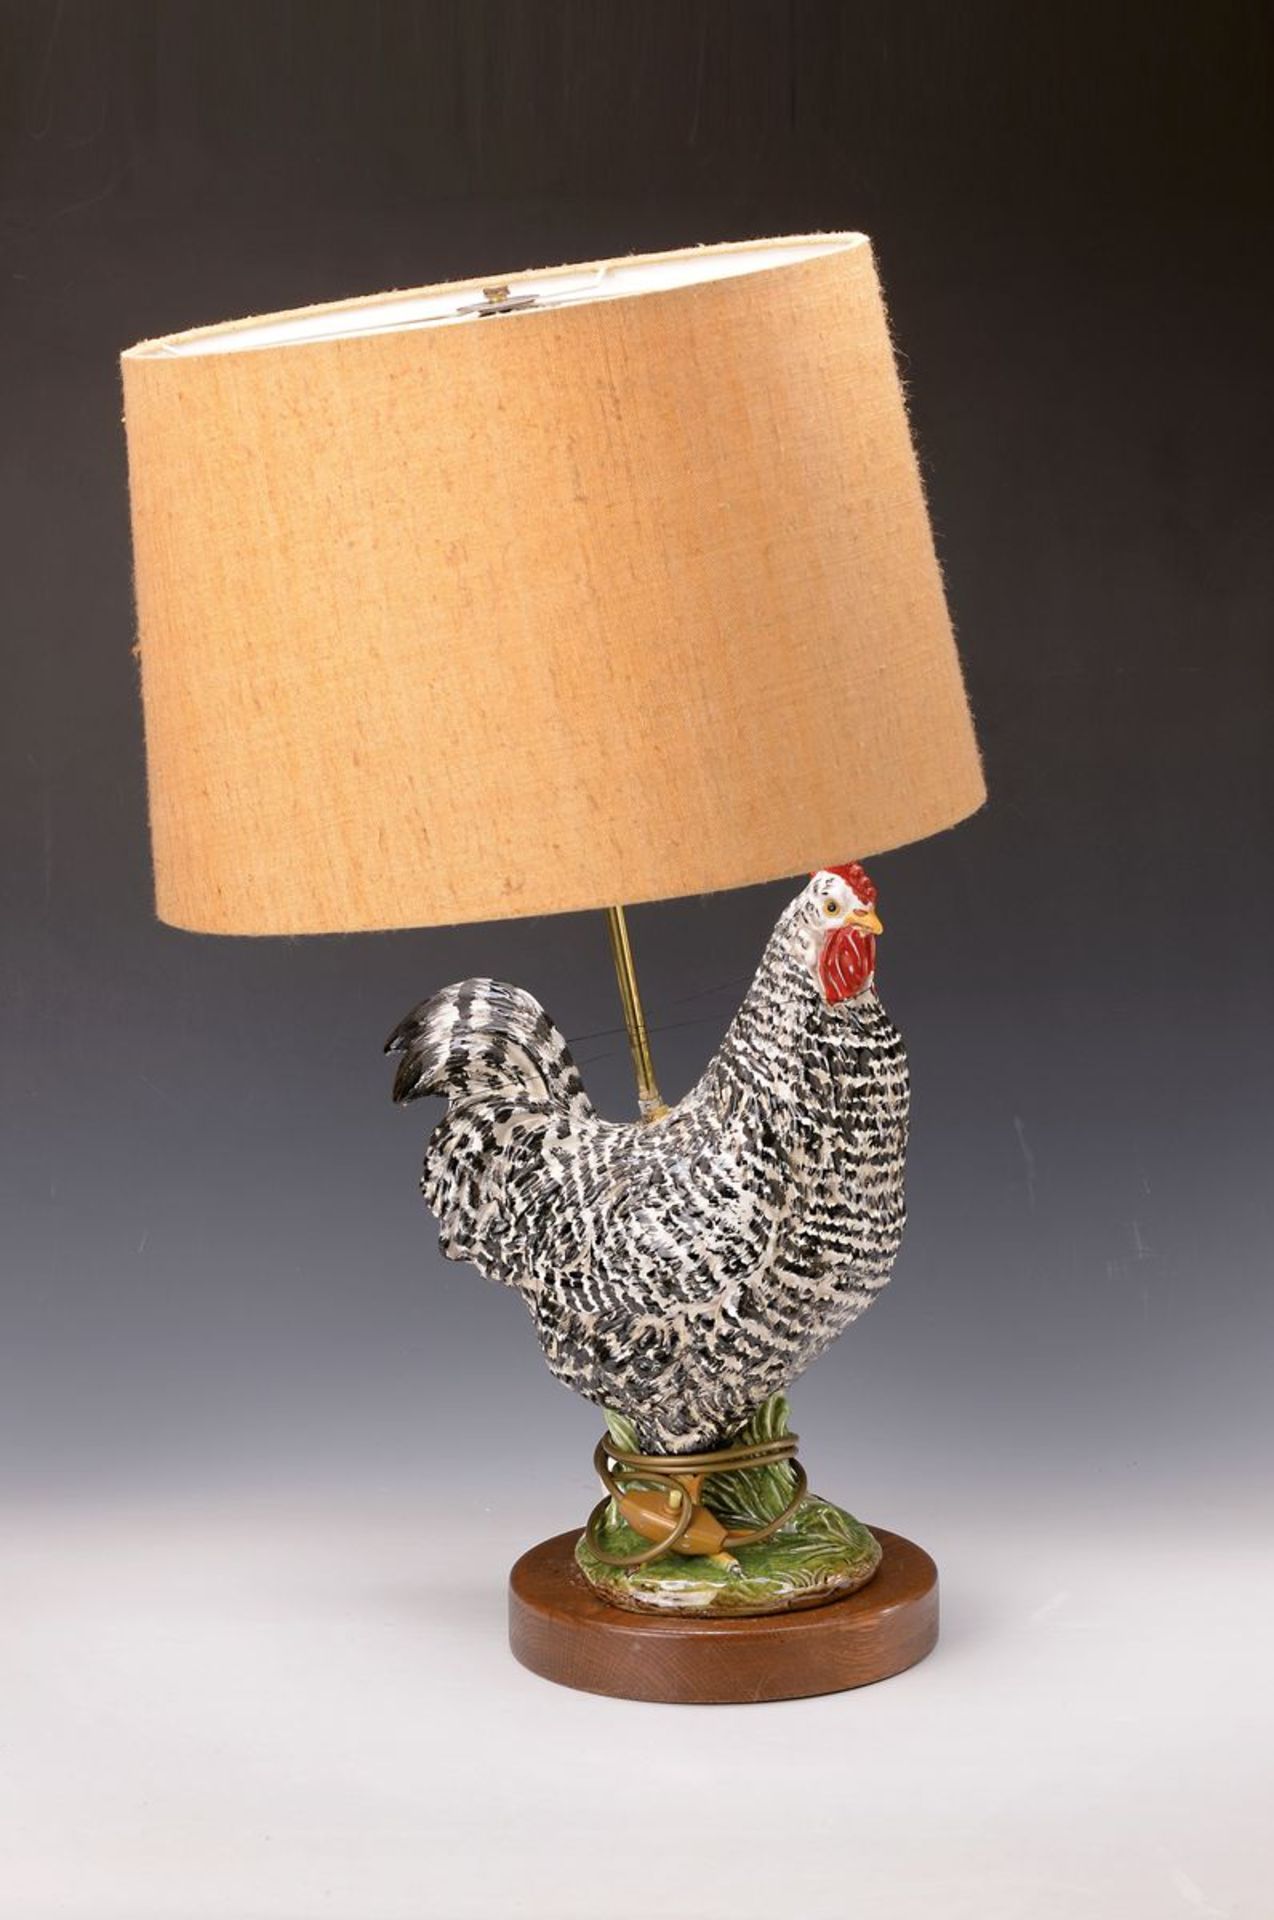 Tischlampe, Italien, 70/80er Jahre, großes Fayence-Huhn auf Holzsockel, zwei Brennstellen,